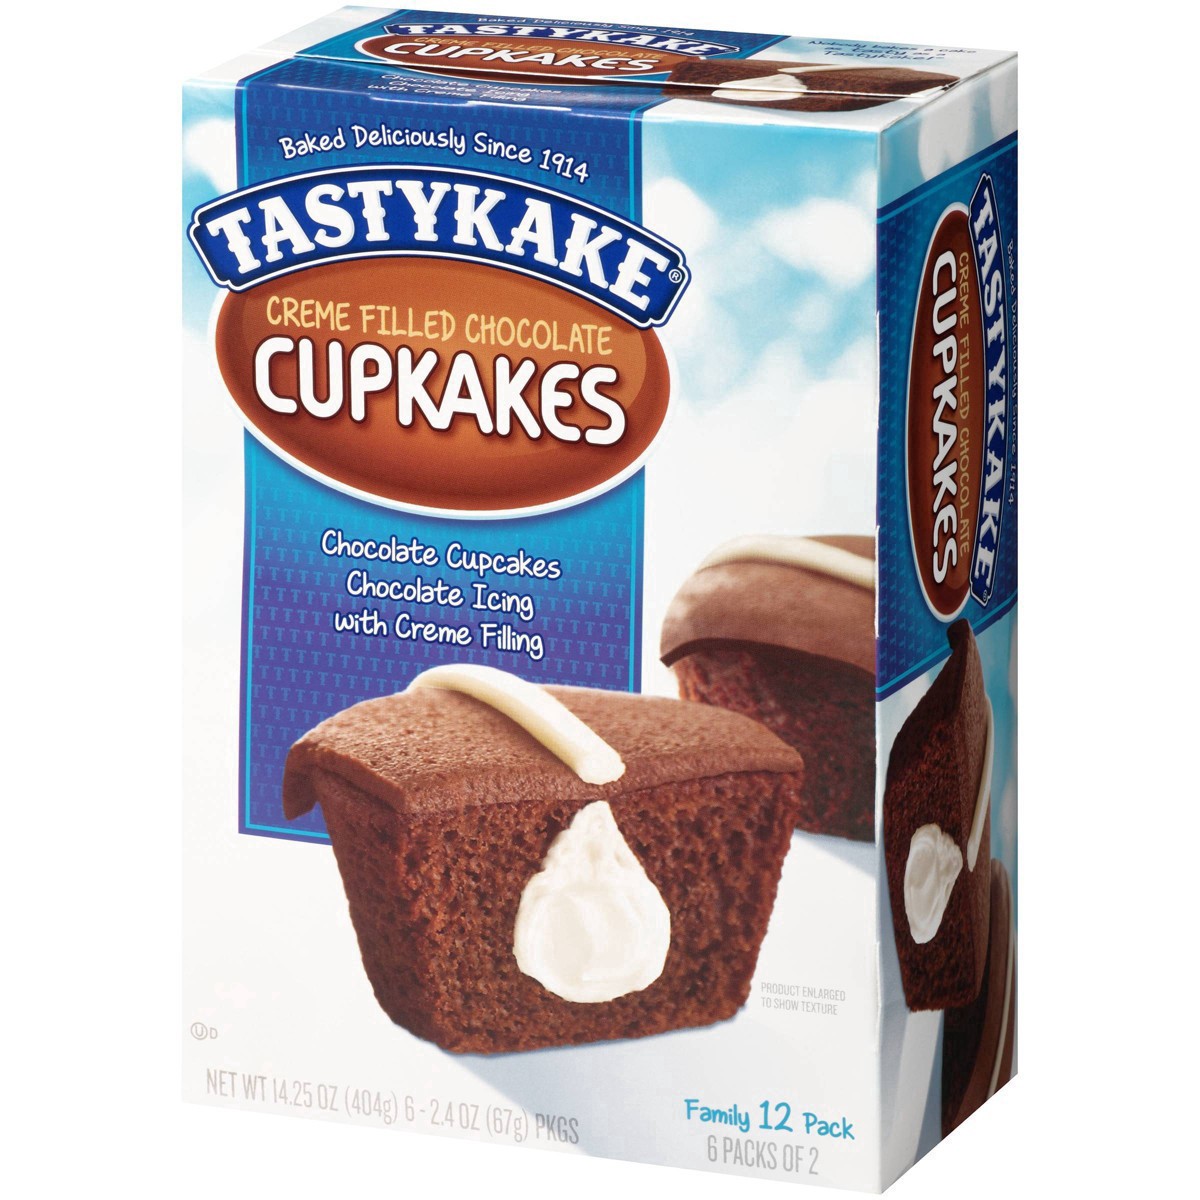 slide 20 of 59, Tastykake Creme Filled Chocolate Cupcakes 6-2.4 oz. Packs, 6 ct